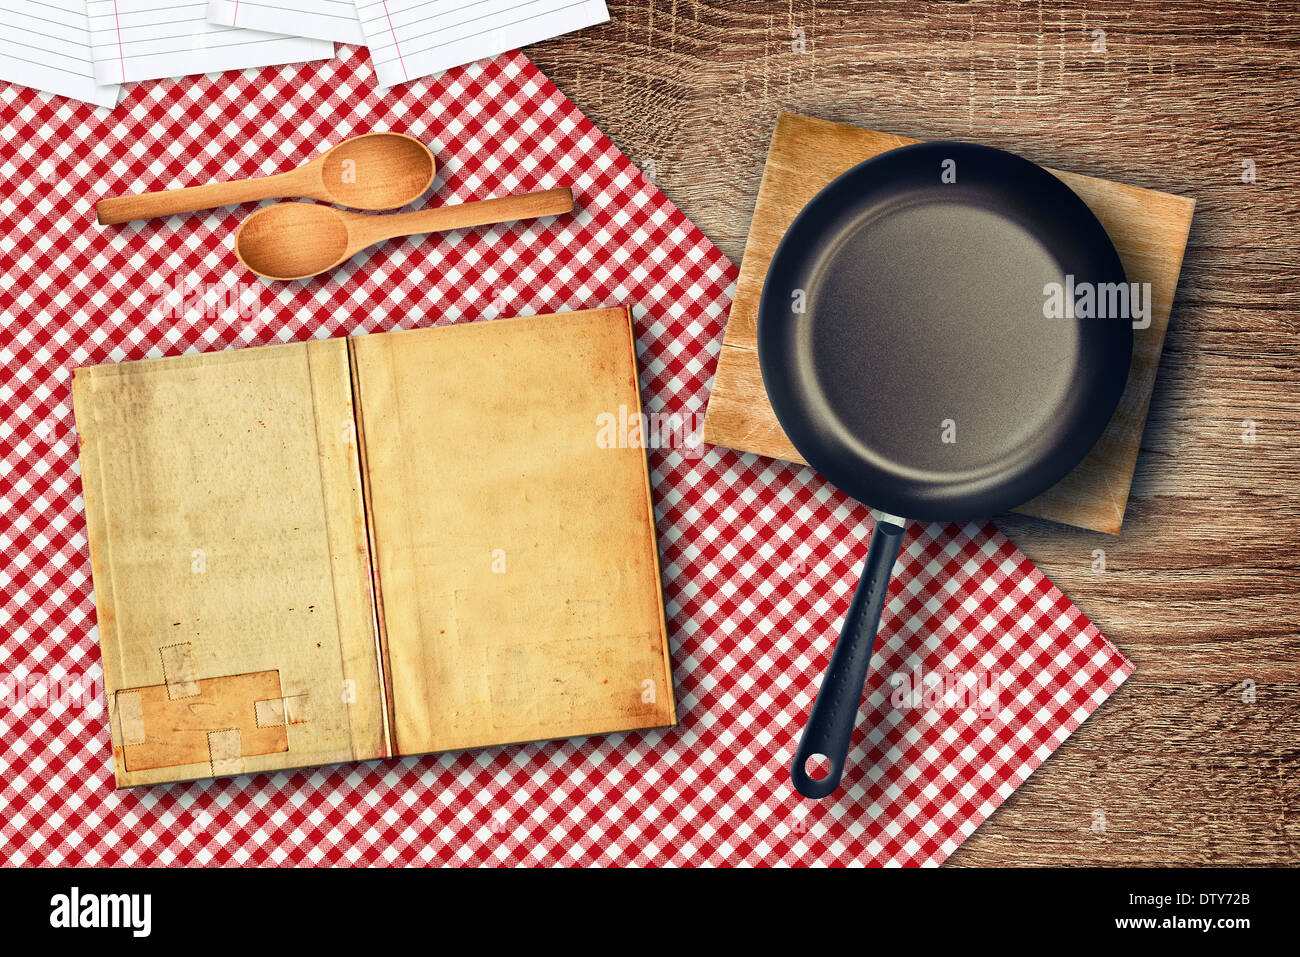 La preparazione del cibo sul tavolo della cucina. Vari utensili da cucina sul tavolo - cucchiai, libro di ricette e padella. Foto Stock